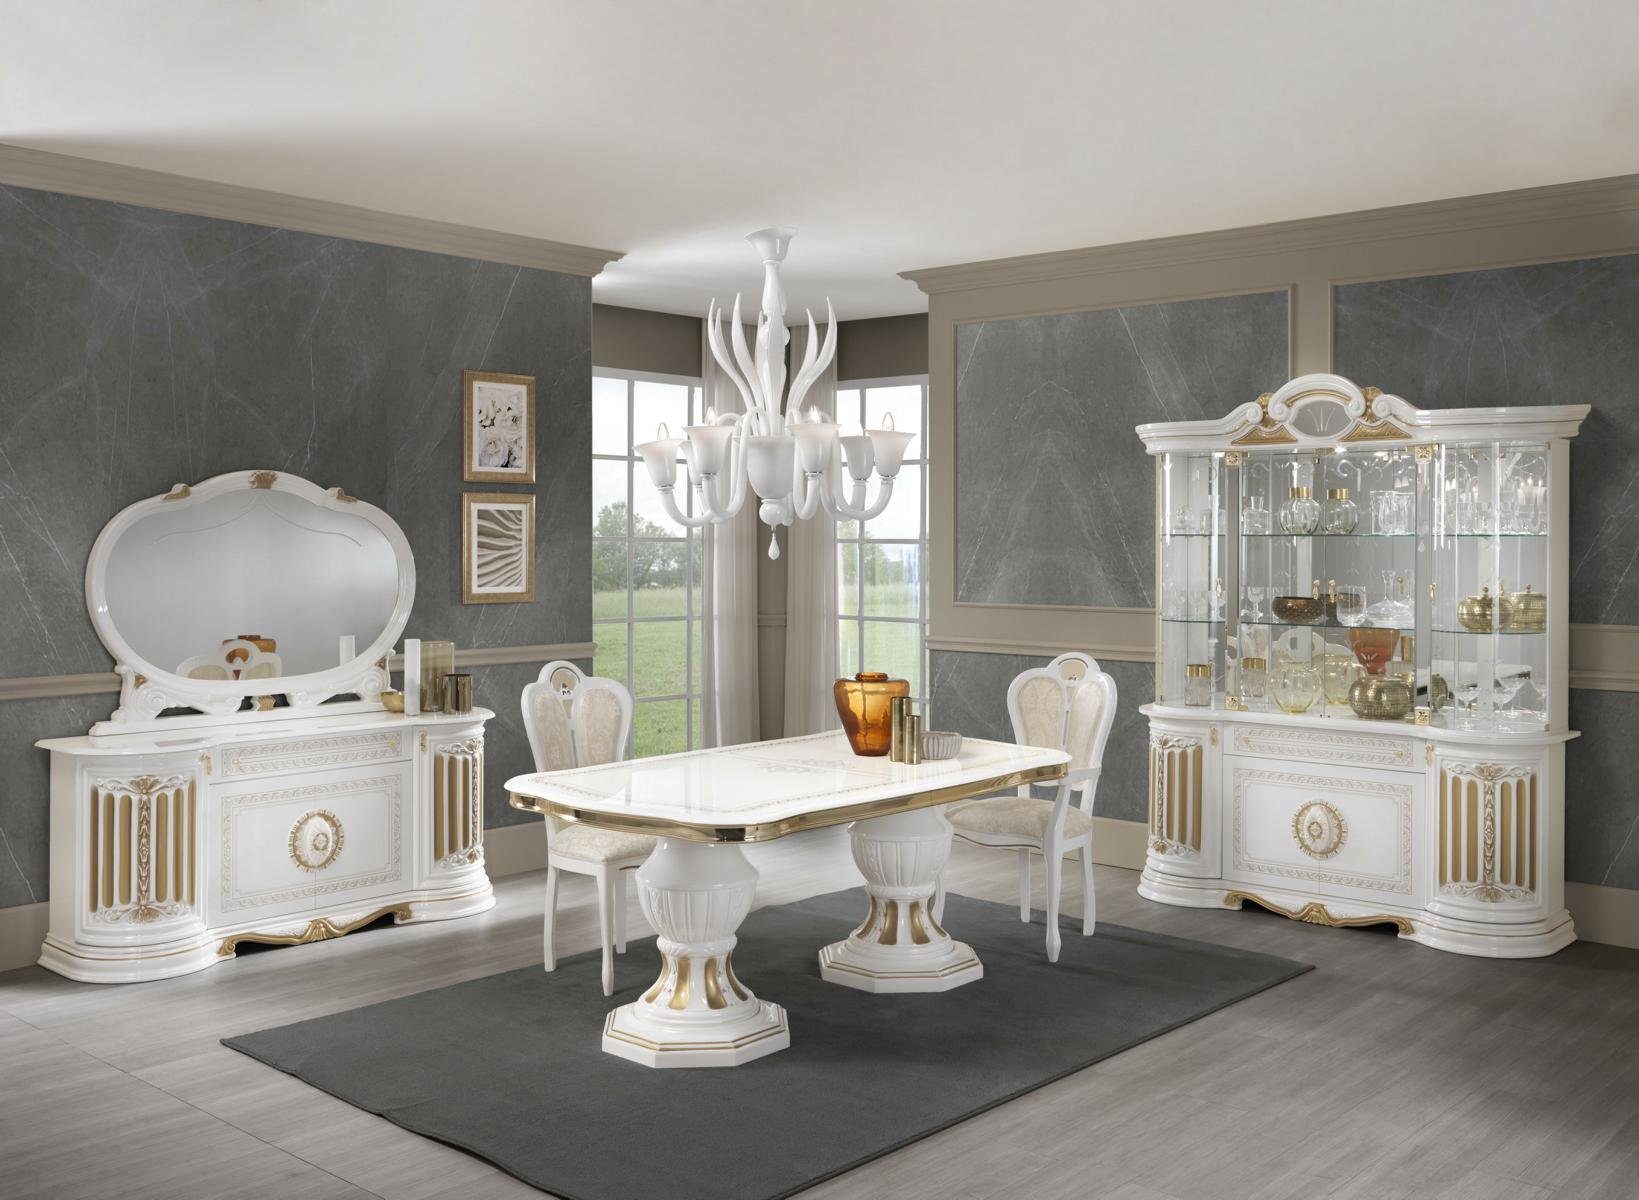 JVmoebel Esstisch stil wohnzimmer möbel italienischer tisch tische gold esstisch weiss